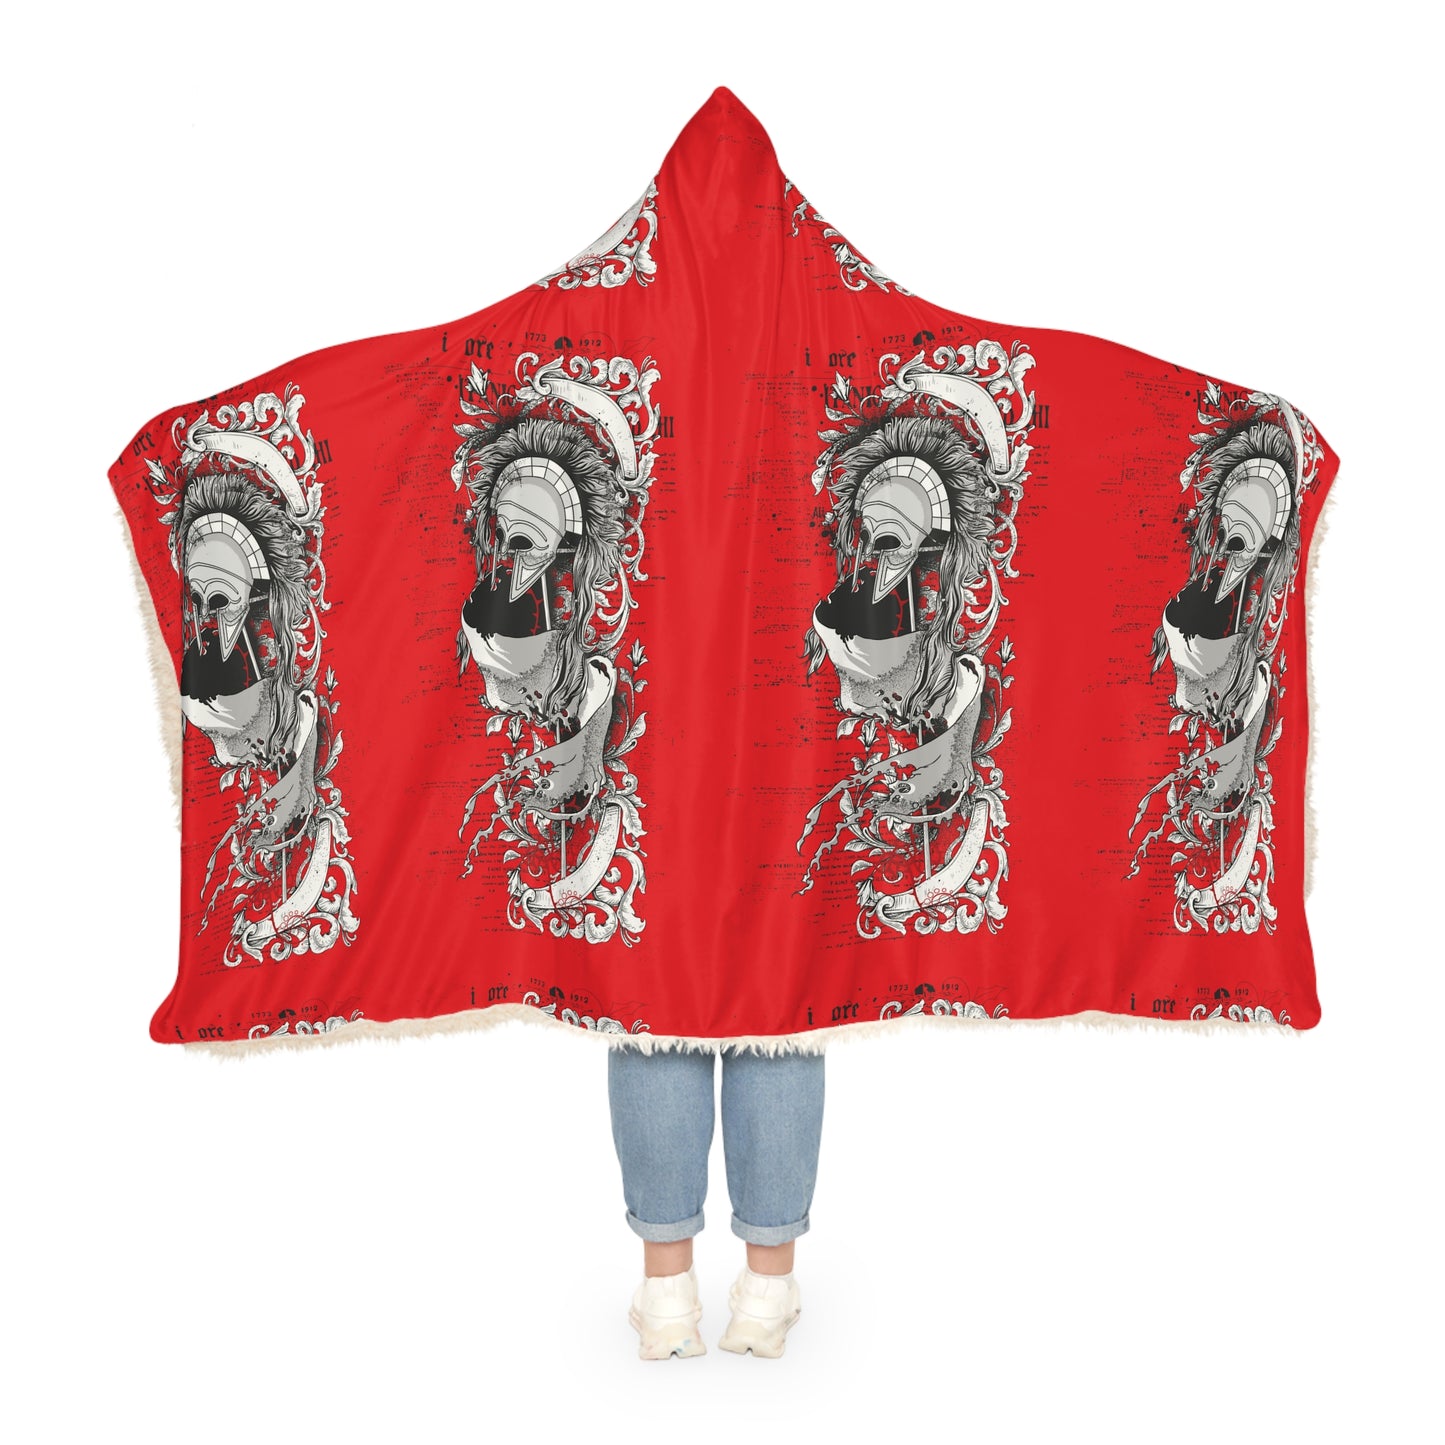 Snuggle Centurion Blanket (Red)